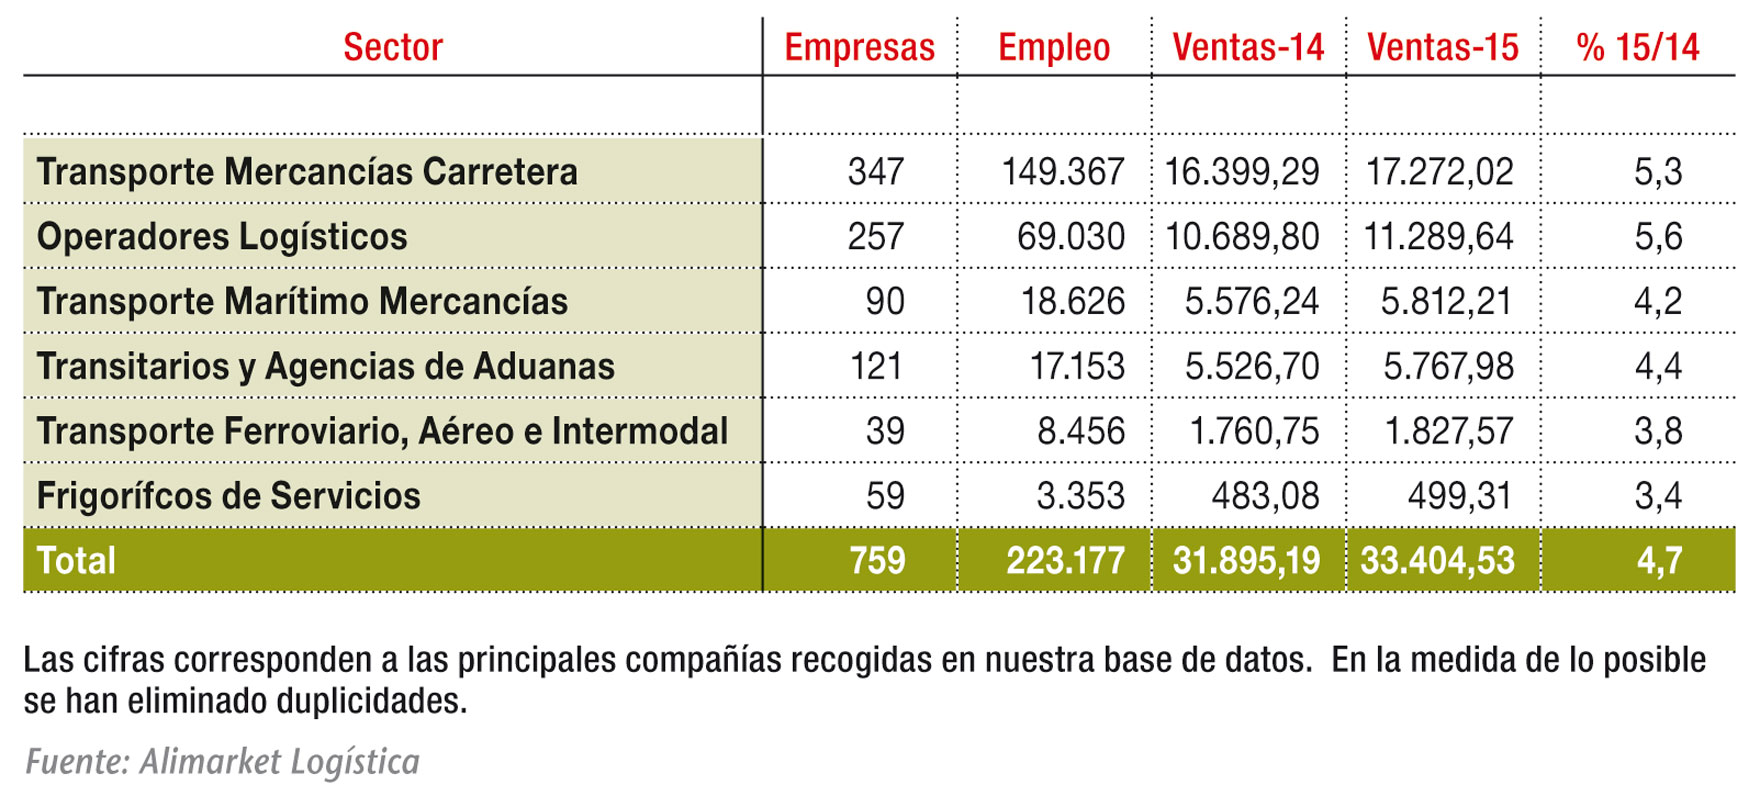 Principales magnitudes de los sectores de Transporte y Logística en 2015 (M€)